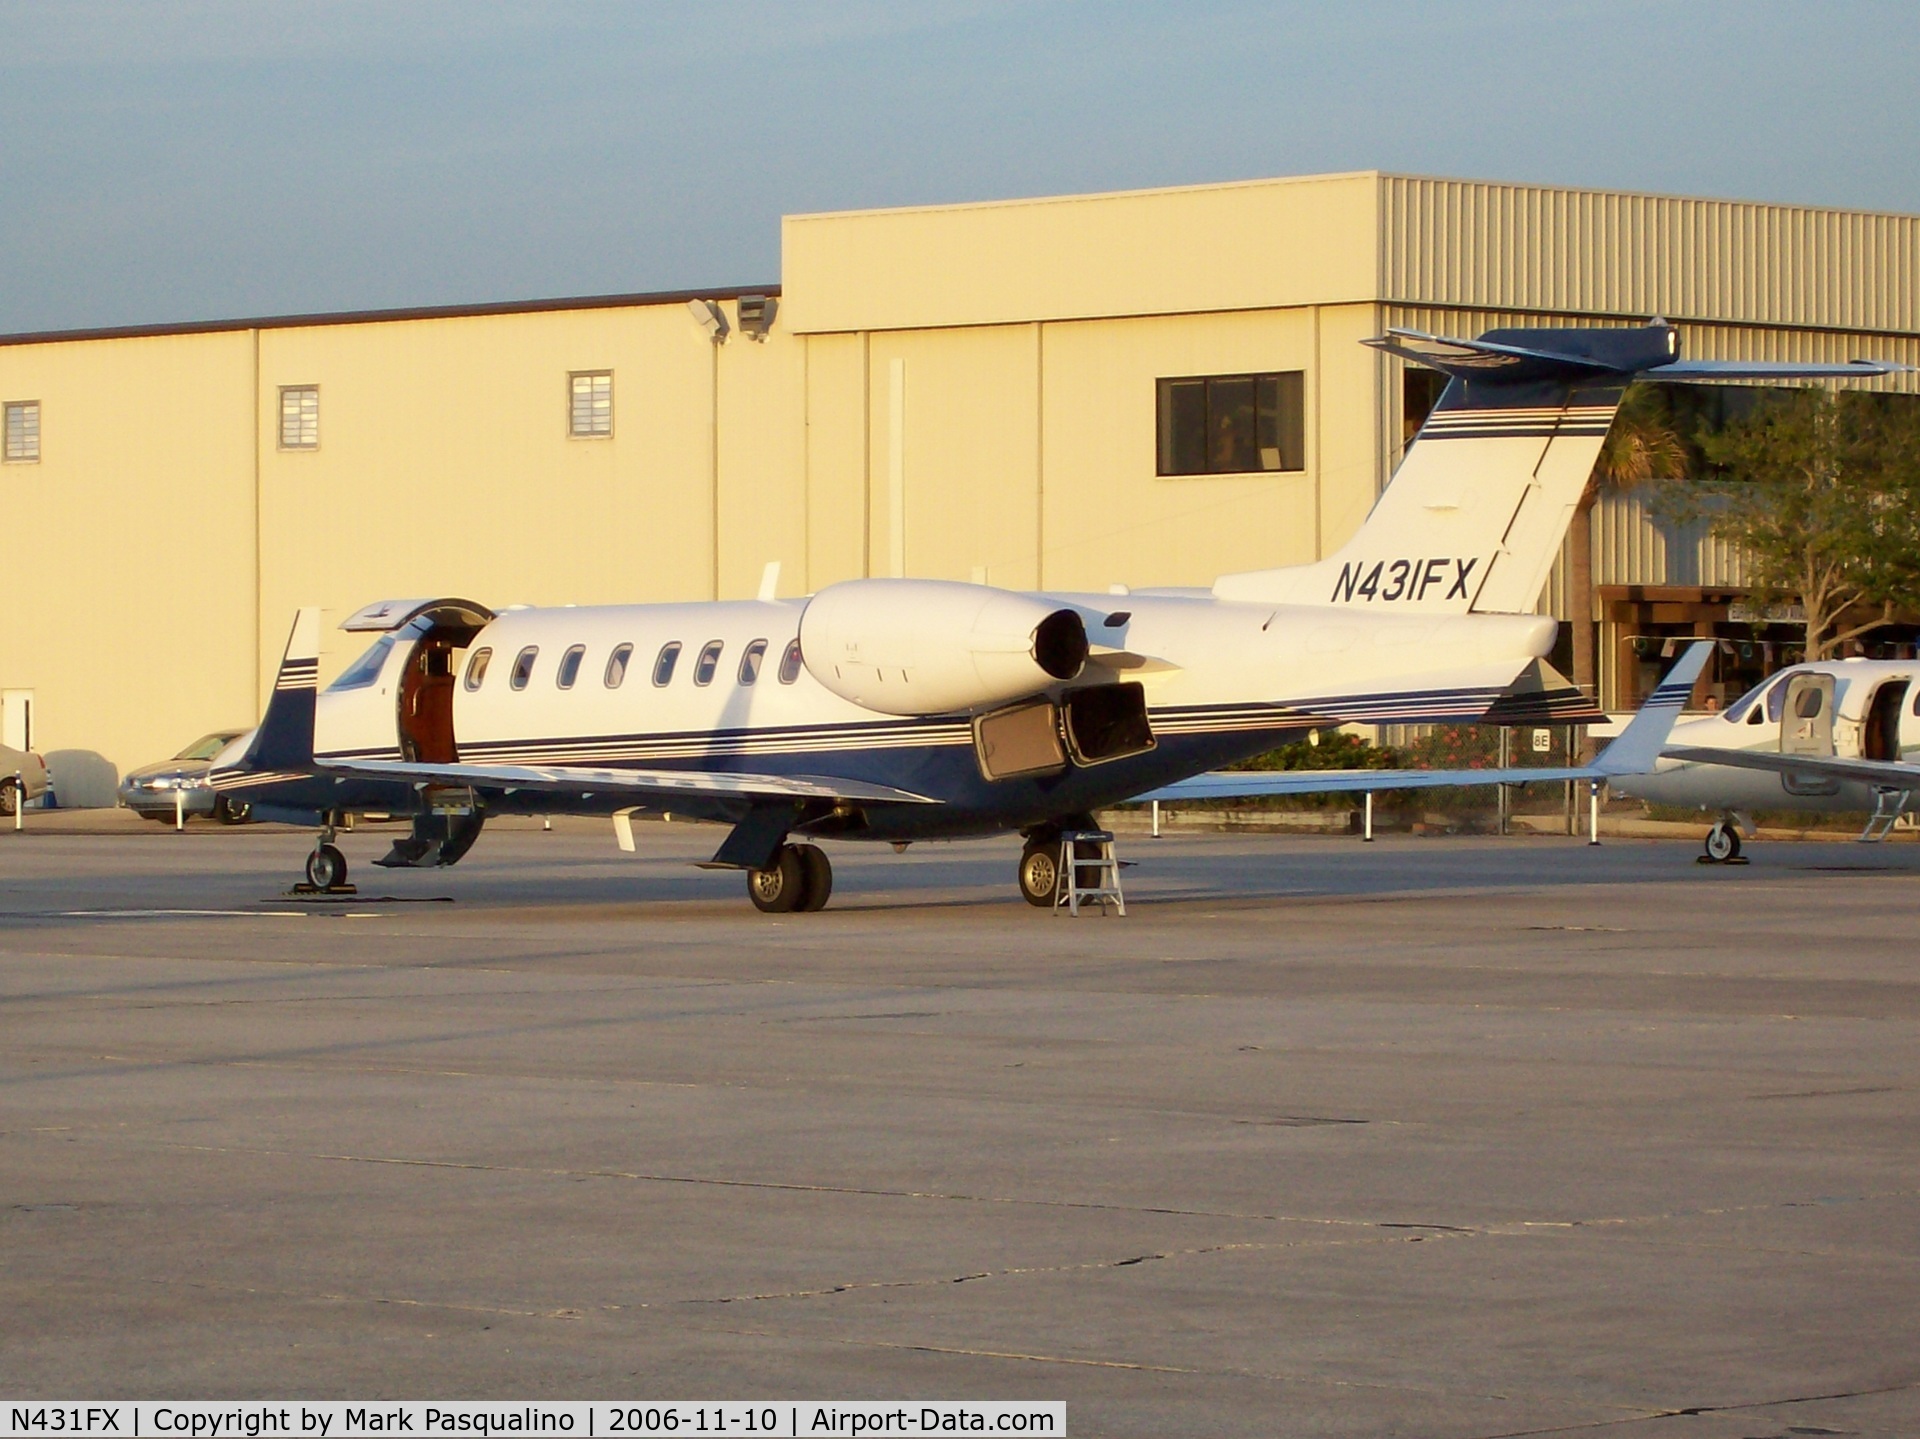 N431FX, 2001 Learjet 45 C/N 177, Lear 45